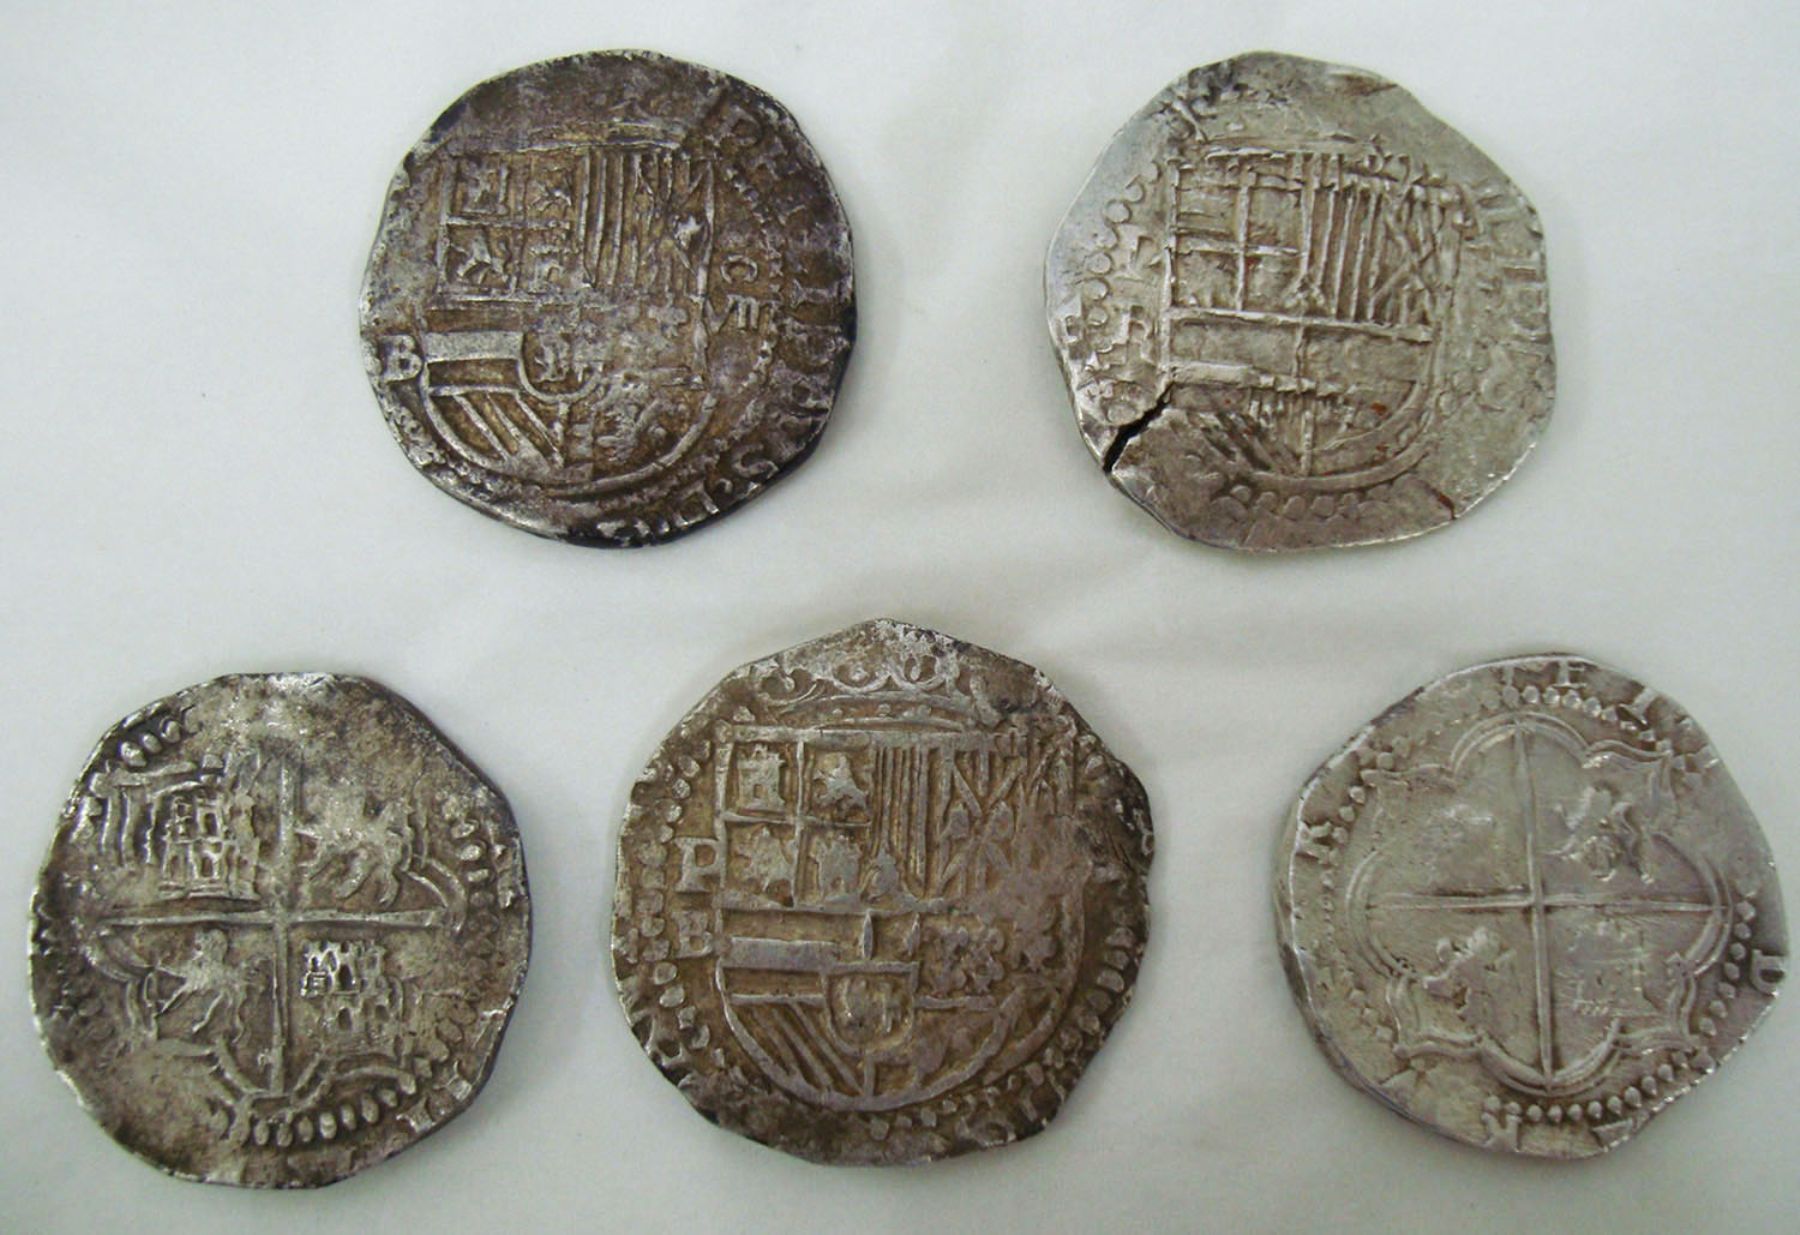 Monedas antiguas también forman parte del grupo de bienes patrimoniales recuperados por el Ministerio de Cultura.